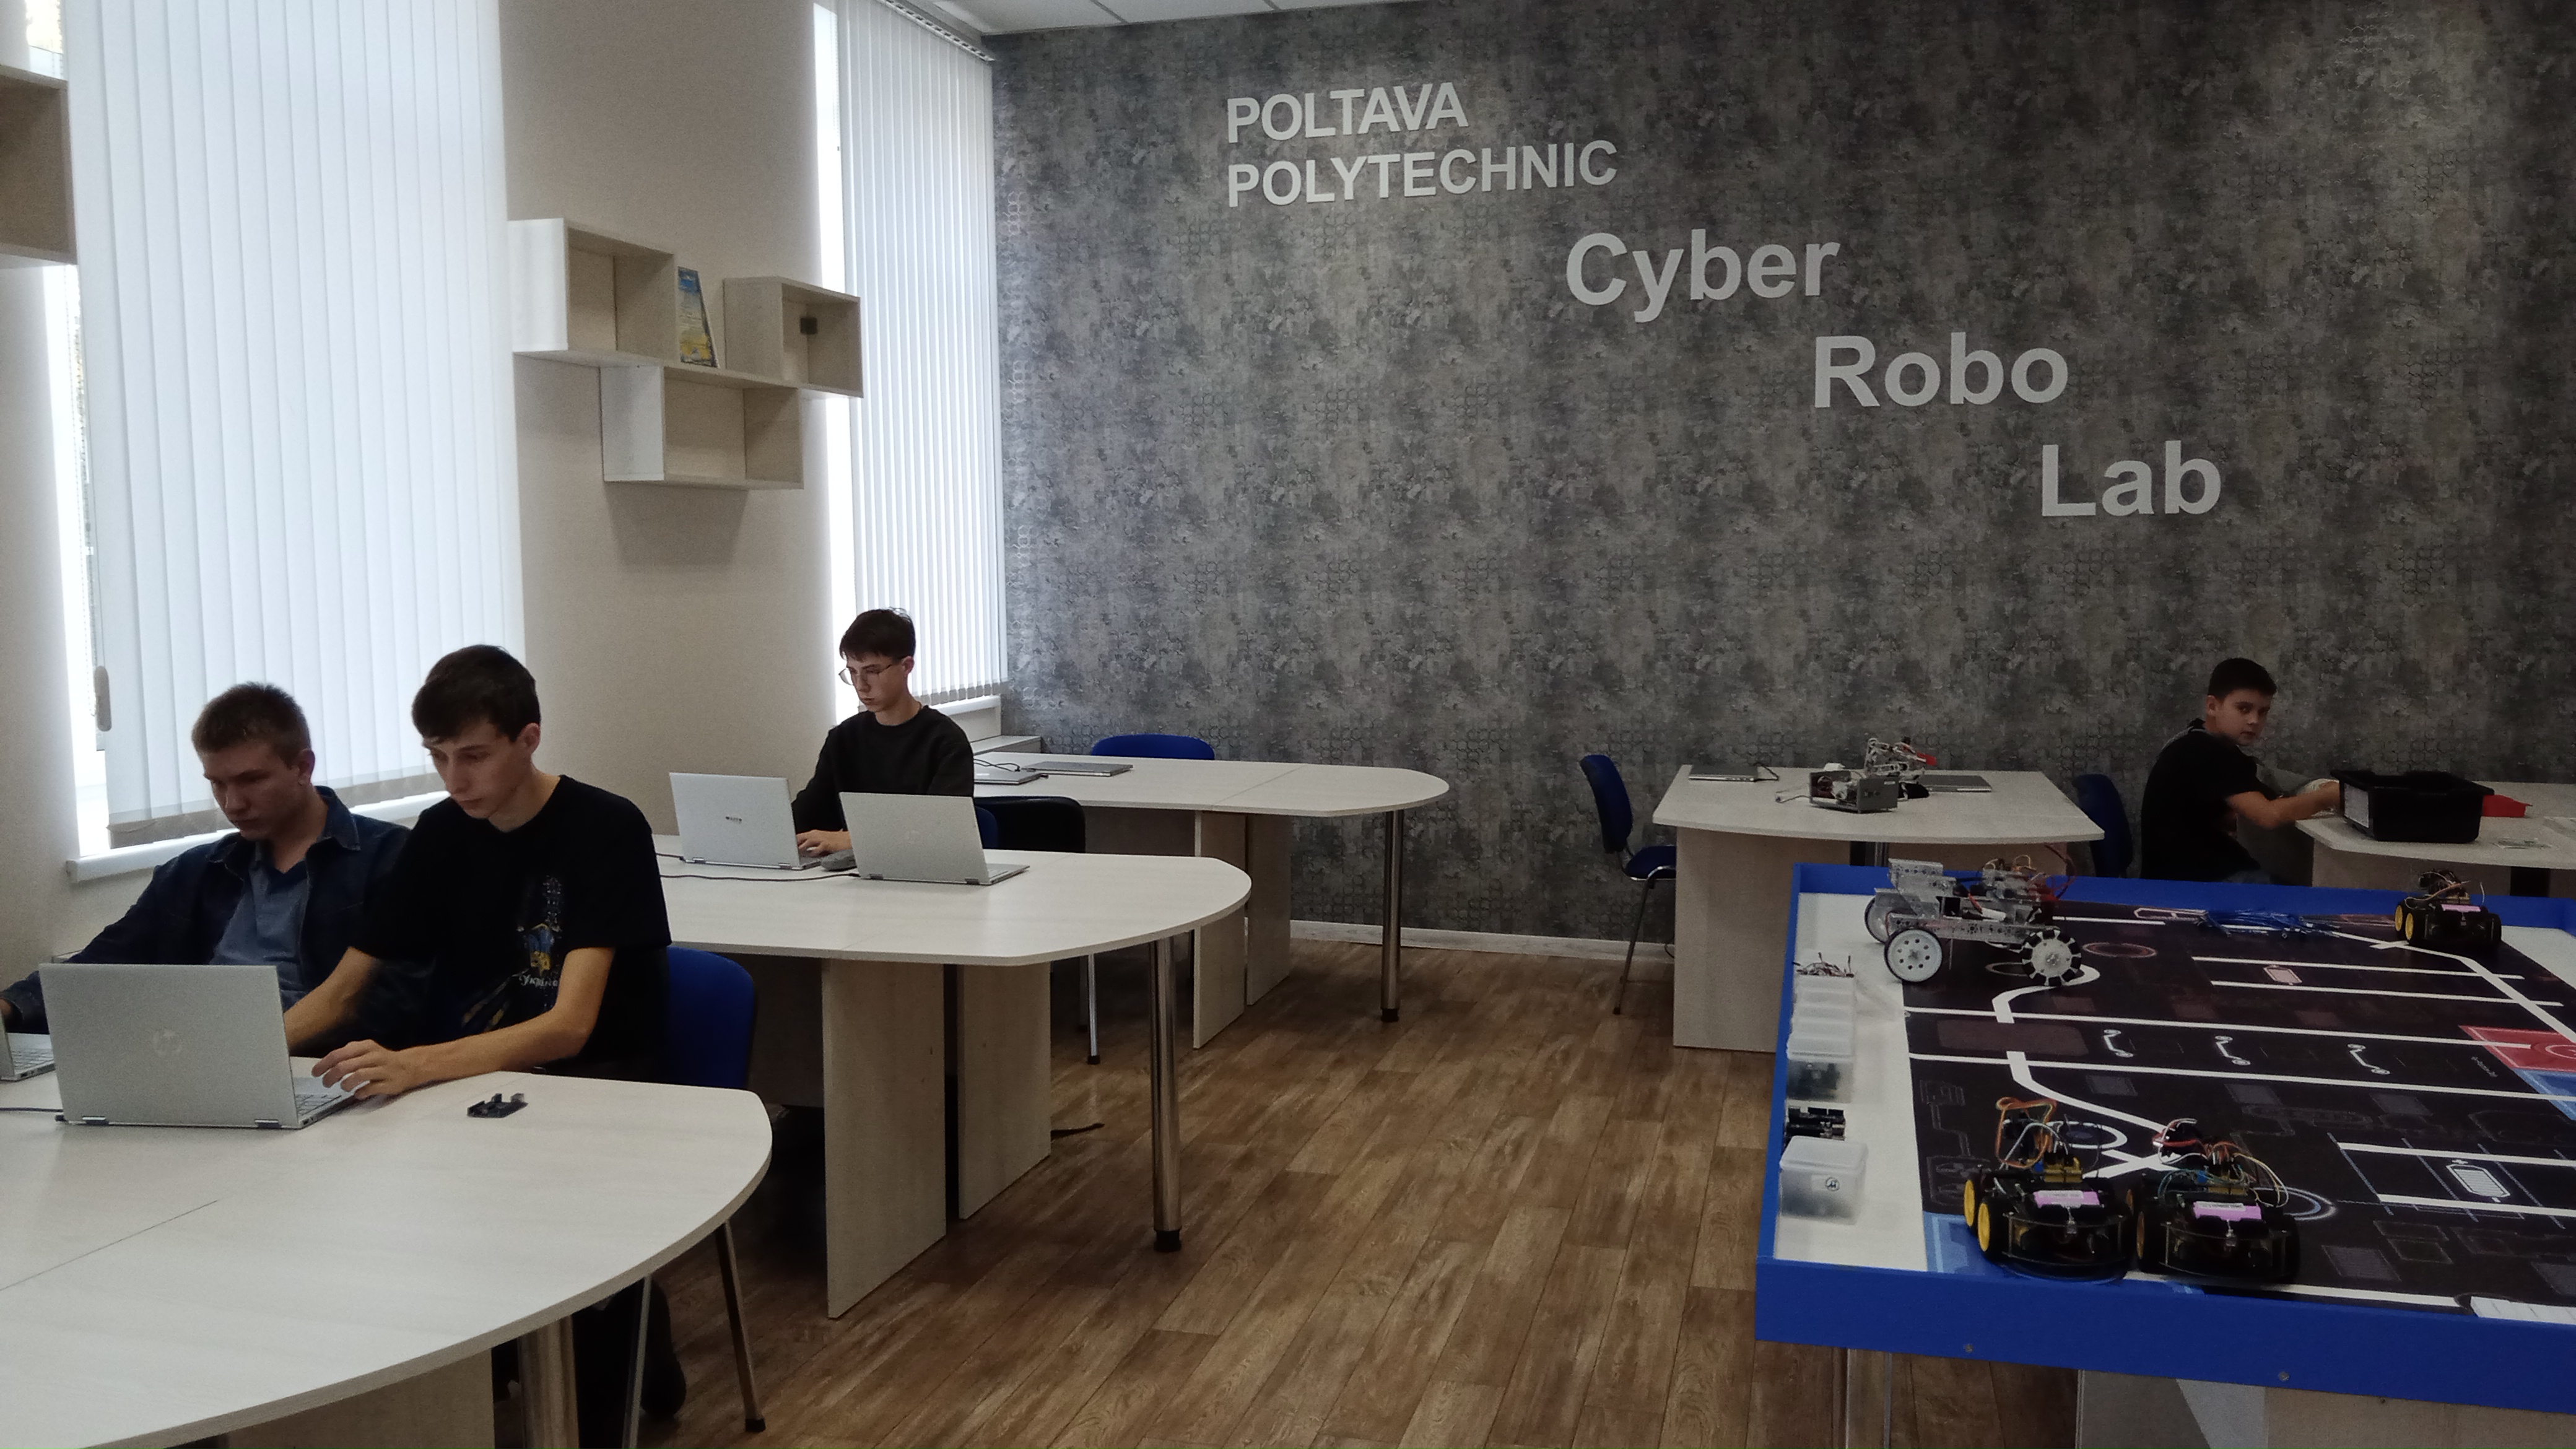 Гурток робототехніки Полтавської політехніки став майданчиком для реалізації найкреативніших молодіжних проєктів